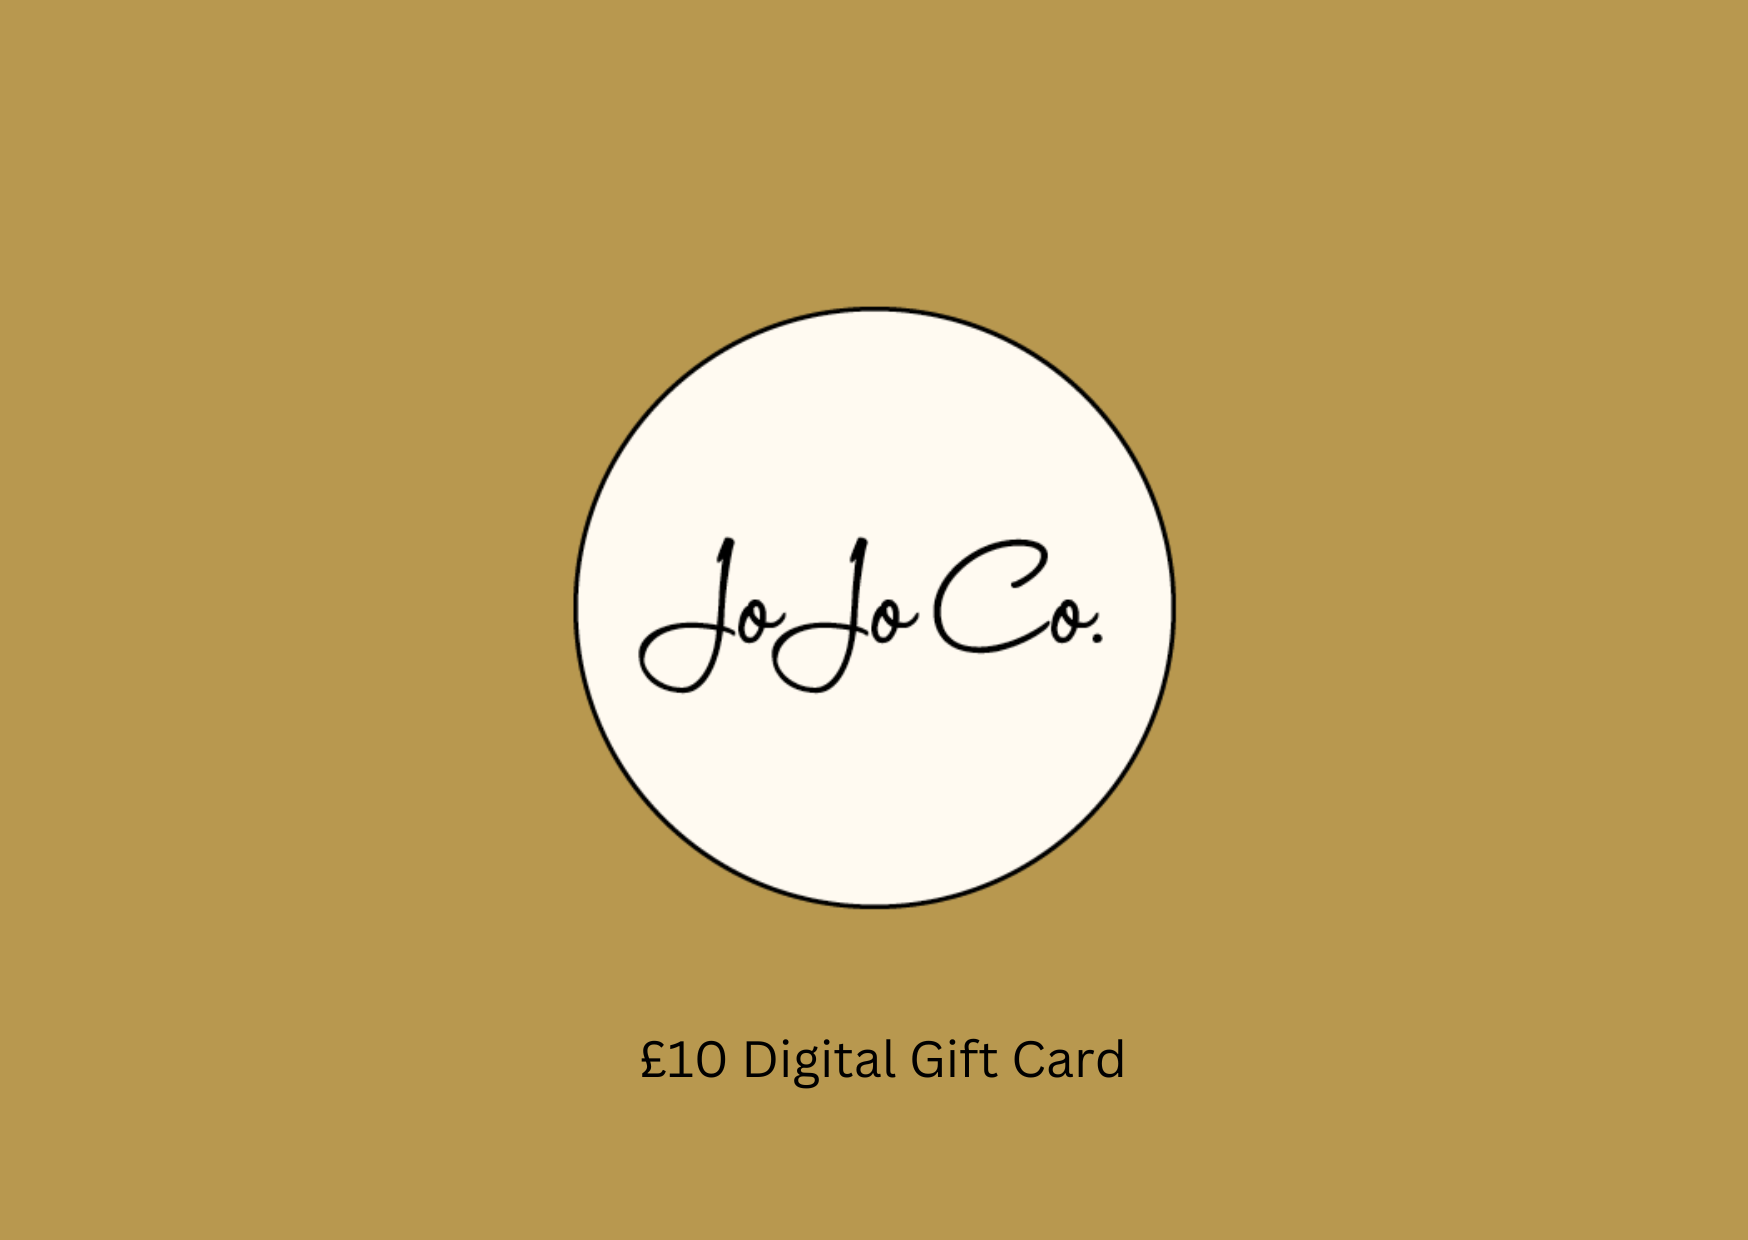 JoJo Co. Digital Gift Cards